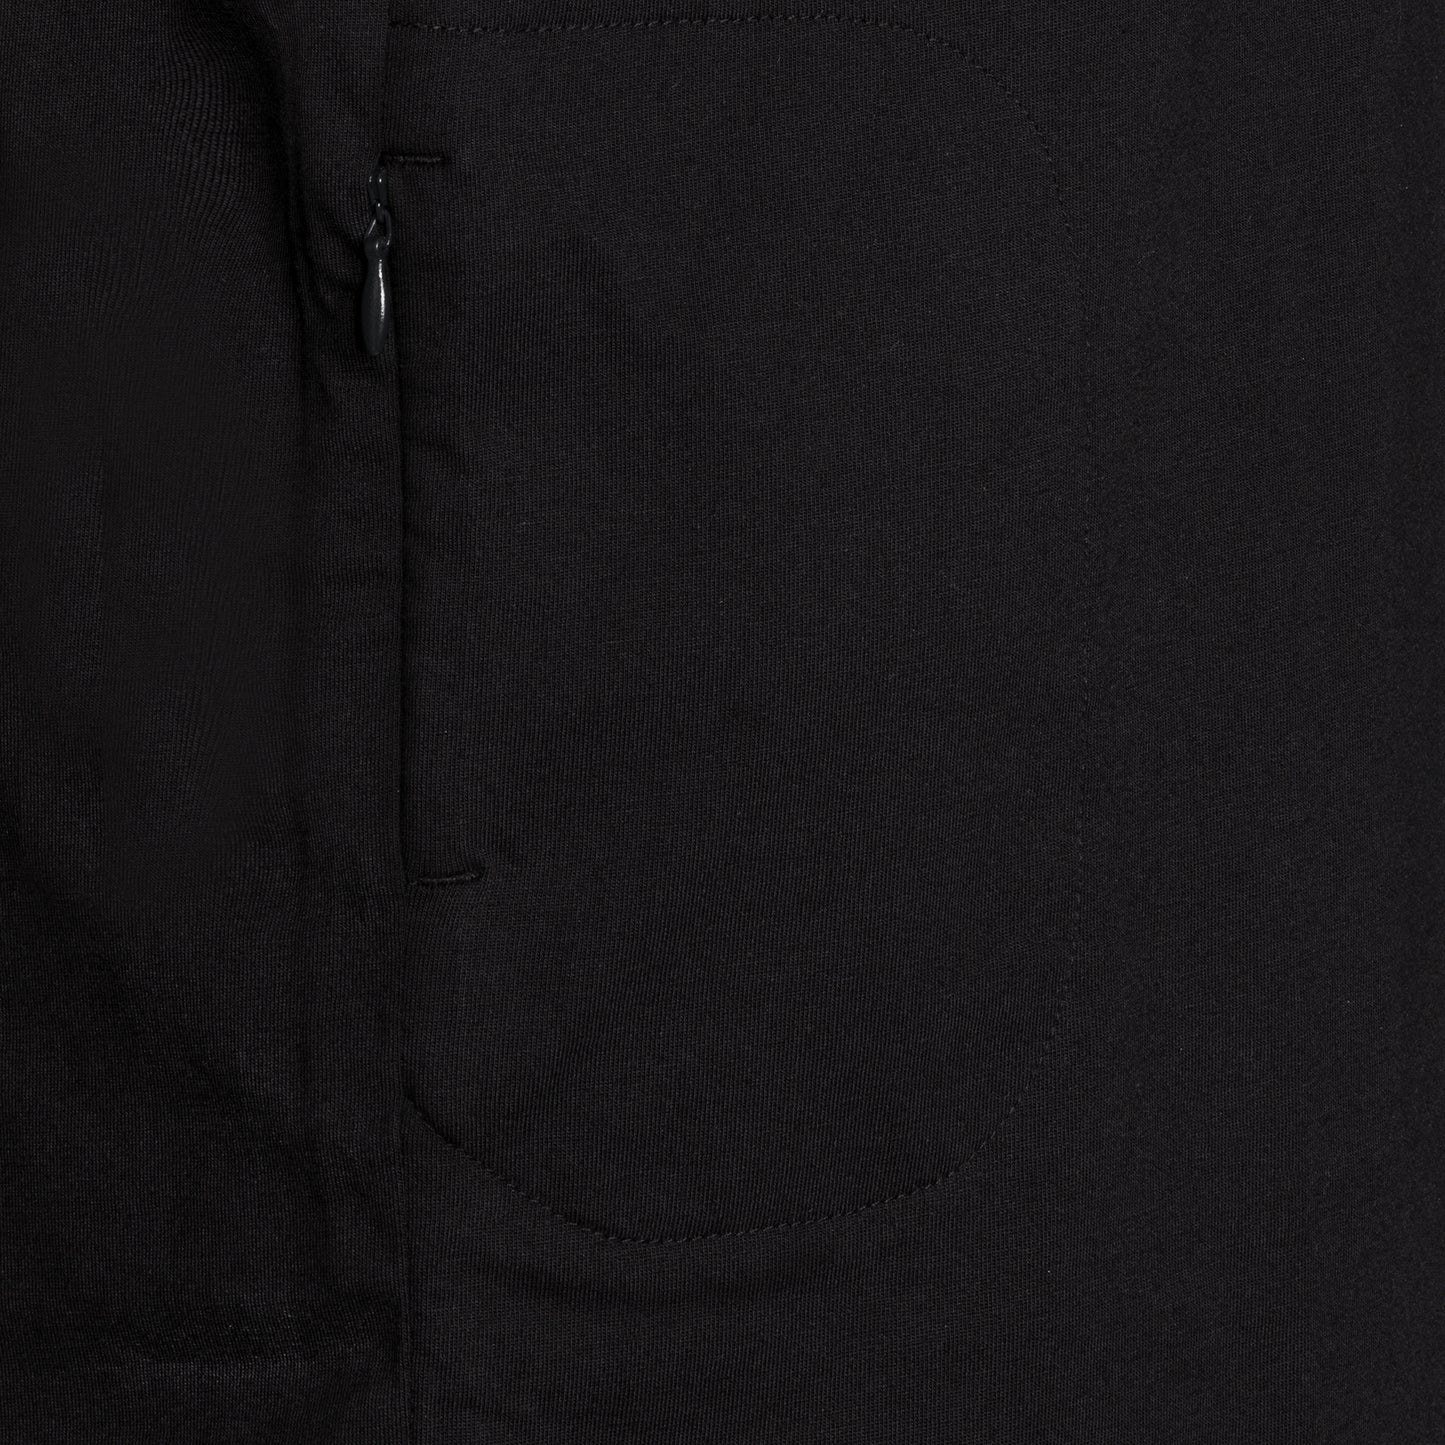 SPYSCAPE Agent Handler T-Shirt with Hidden Zip Pocket - Close up of hidden pocket